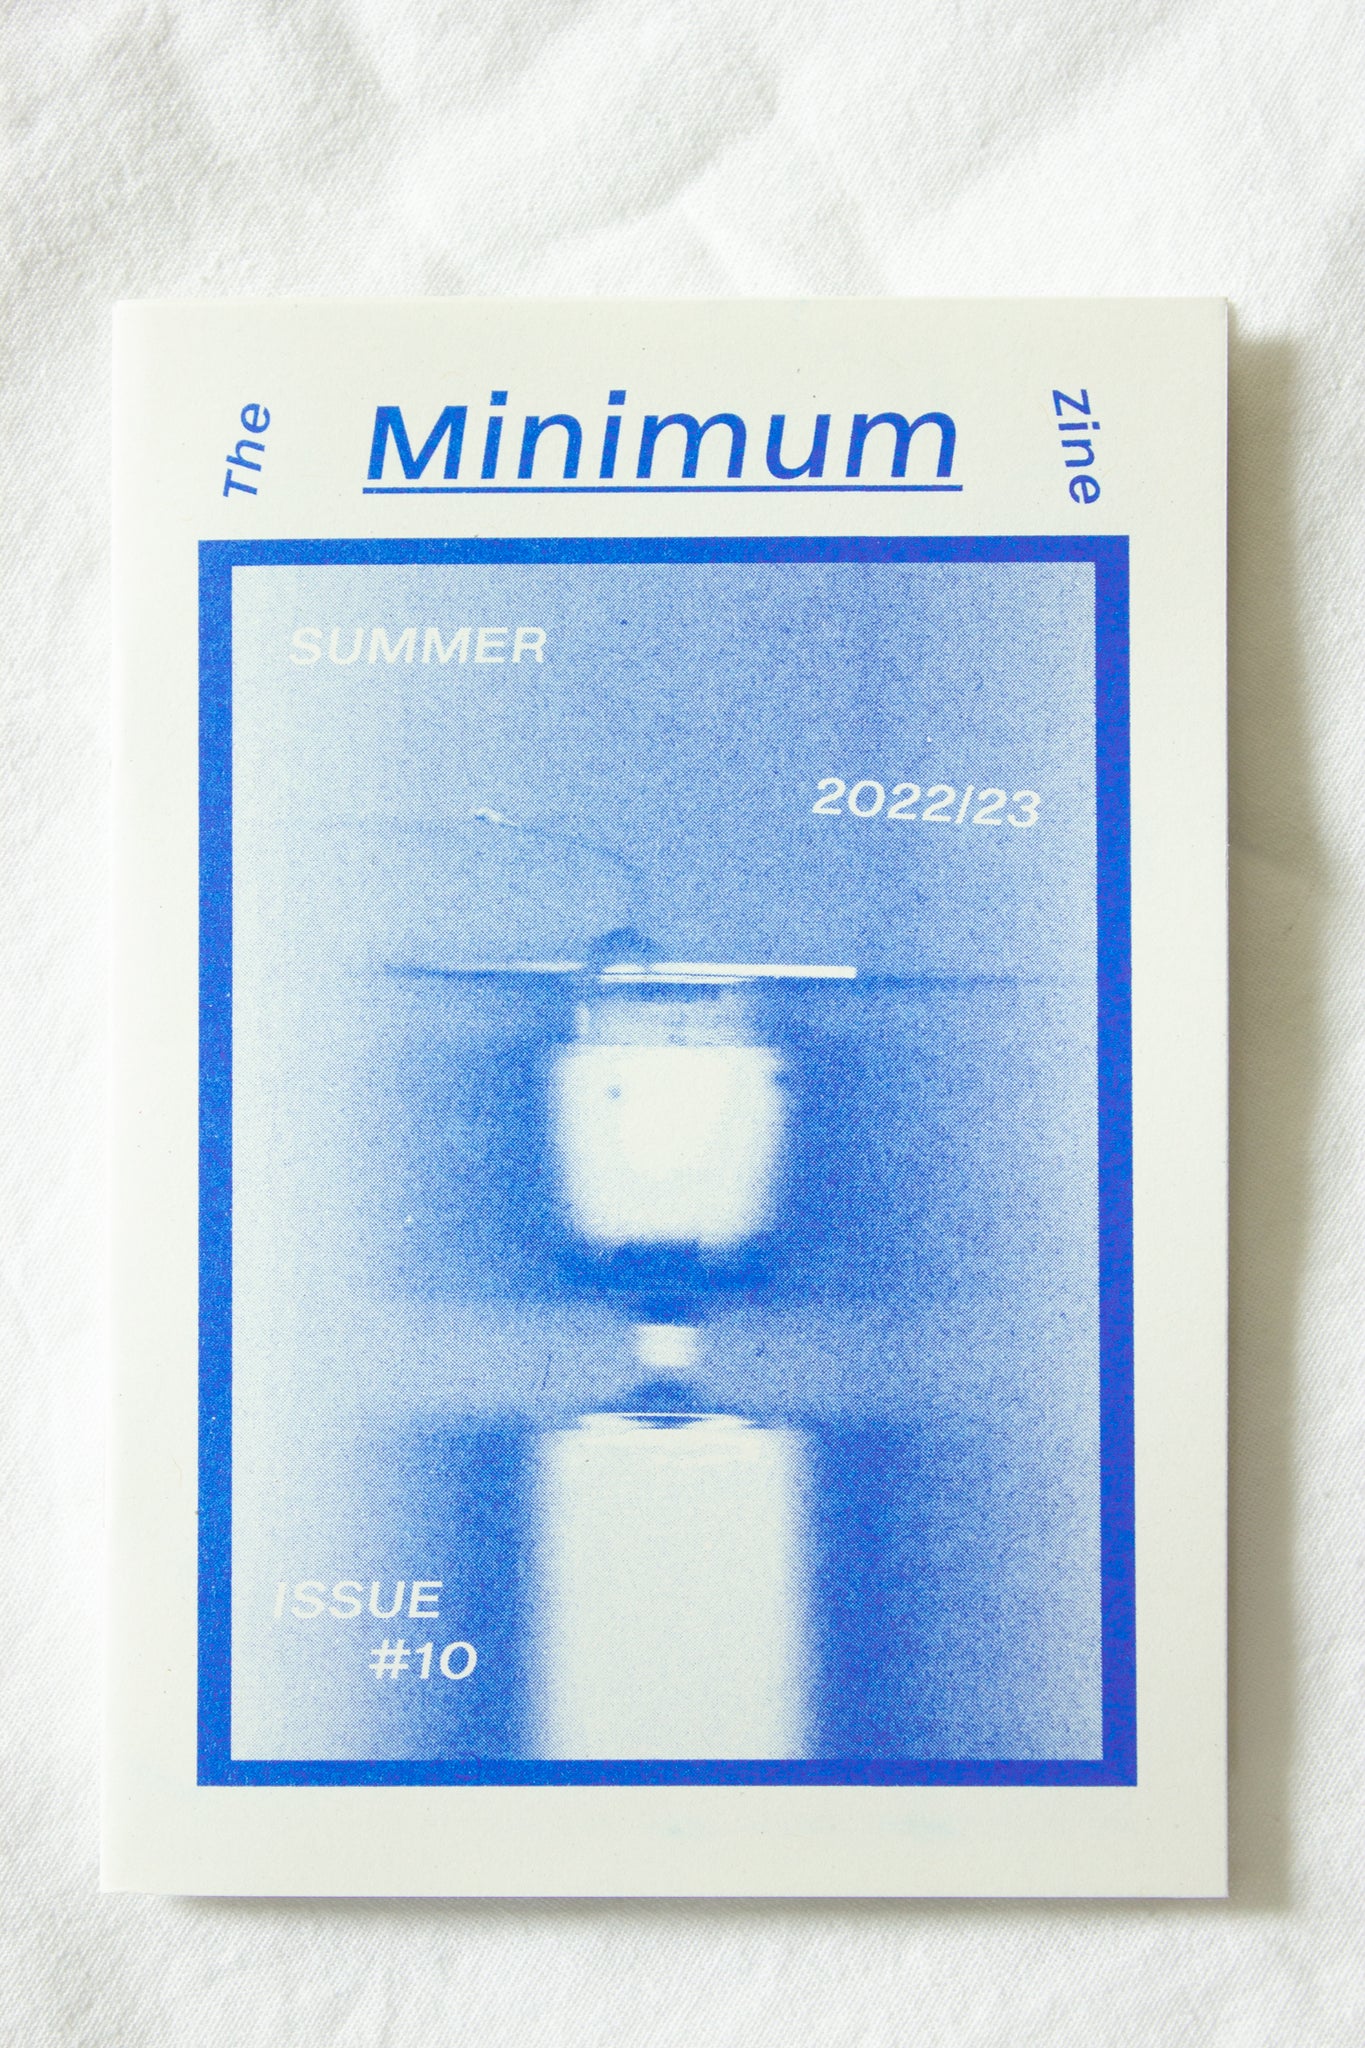 The Minimum Zine Issue #10.